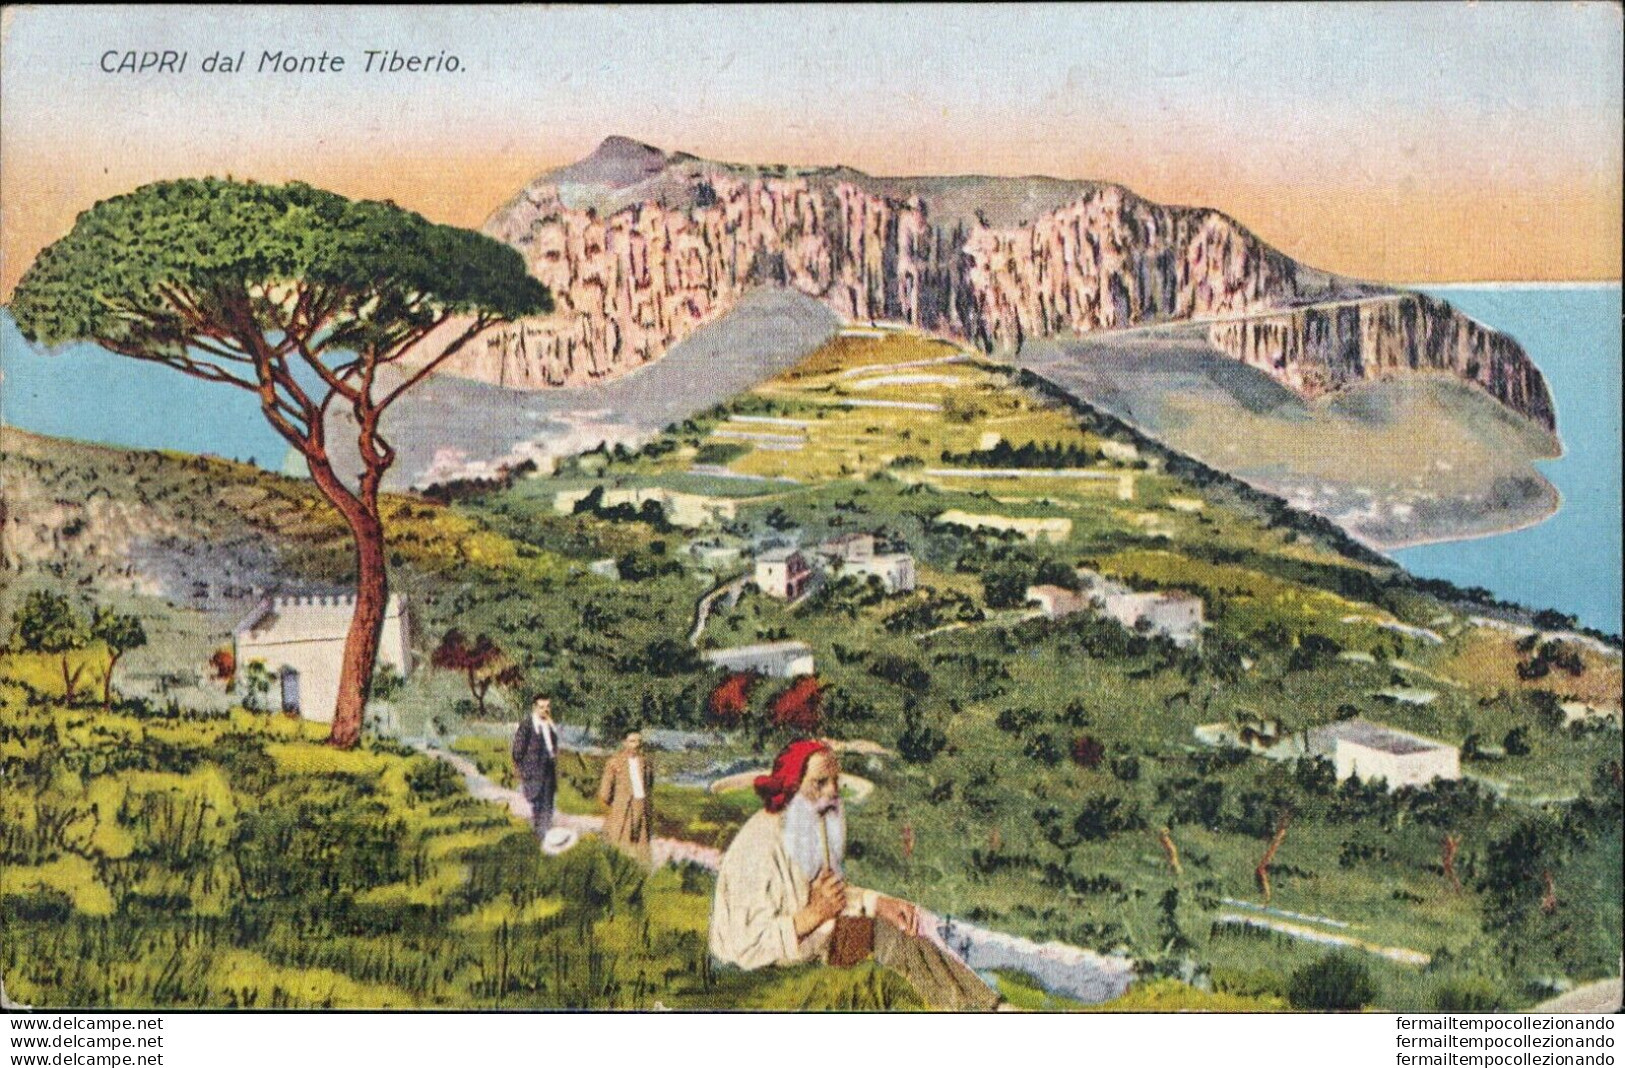 At571 Cartolina Capri Dal Monte Tiberio  Provincia Di Napoli - Napoli (Naples)